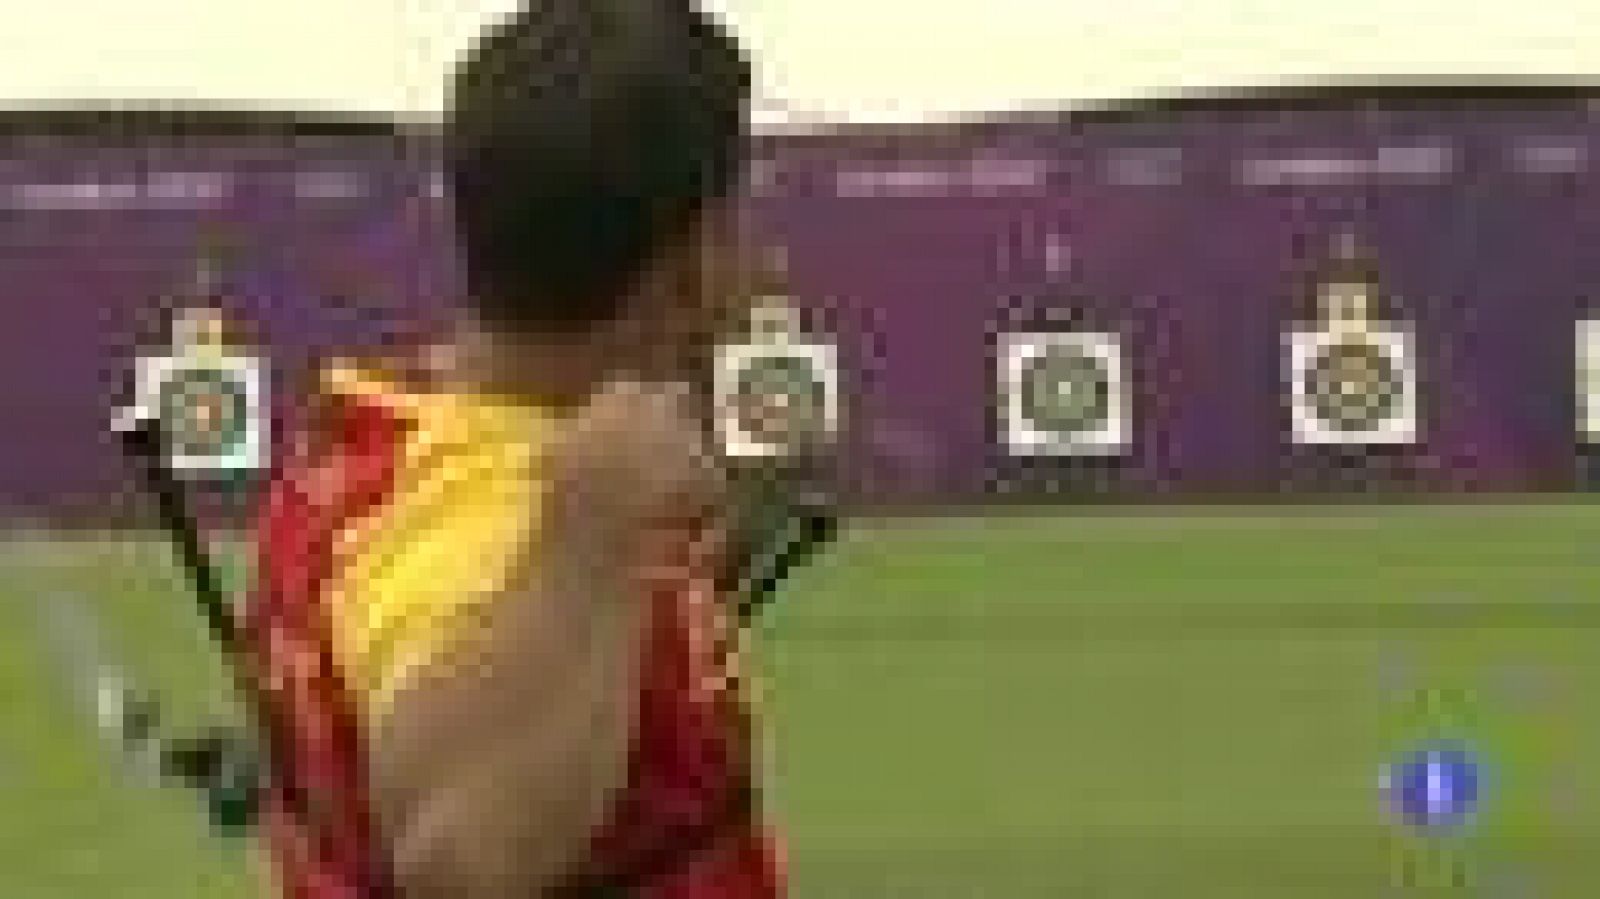 El arquero surcoreano Dong Hyun Im, clínicamente ciego, ha batido el récord del mundo de 72 flechas al liderar con 699 puntos la ronda clasificatoria de la prueba individual masculina de tiro con arco de los Juegos Olímpicos de Londres 2012.